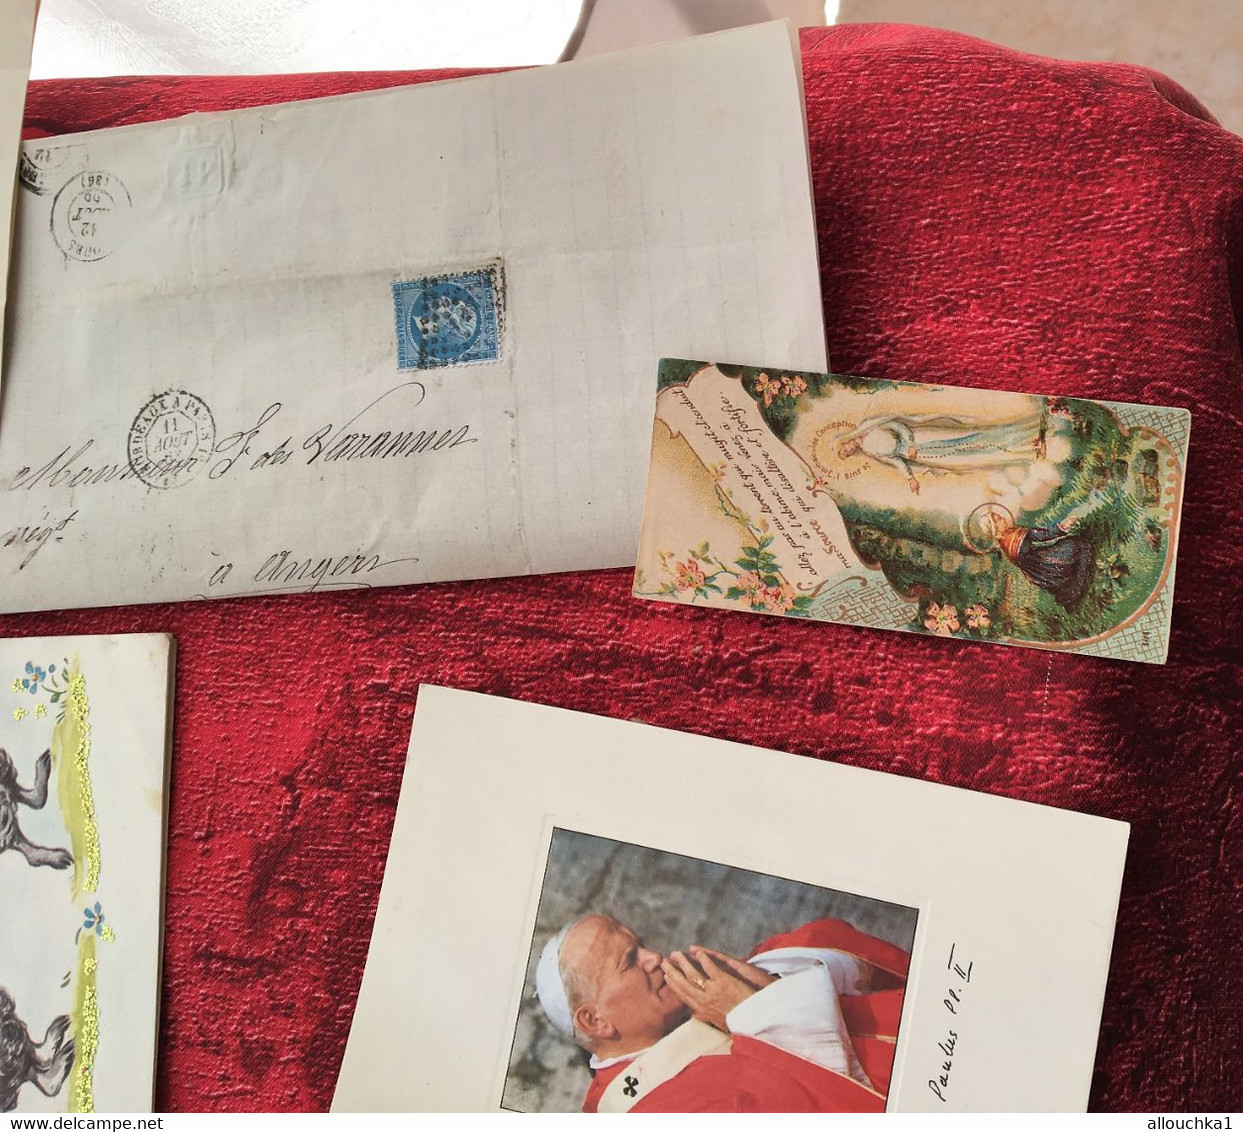 Loisirs créatifs Scrapbooking-Lettres 1850-Images religieuses-lithographie Picasso-Tableau de Fleurs-Carte postale Vœux